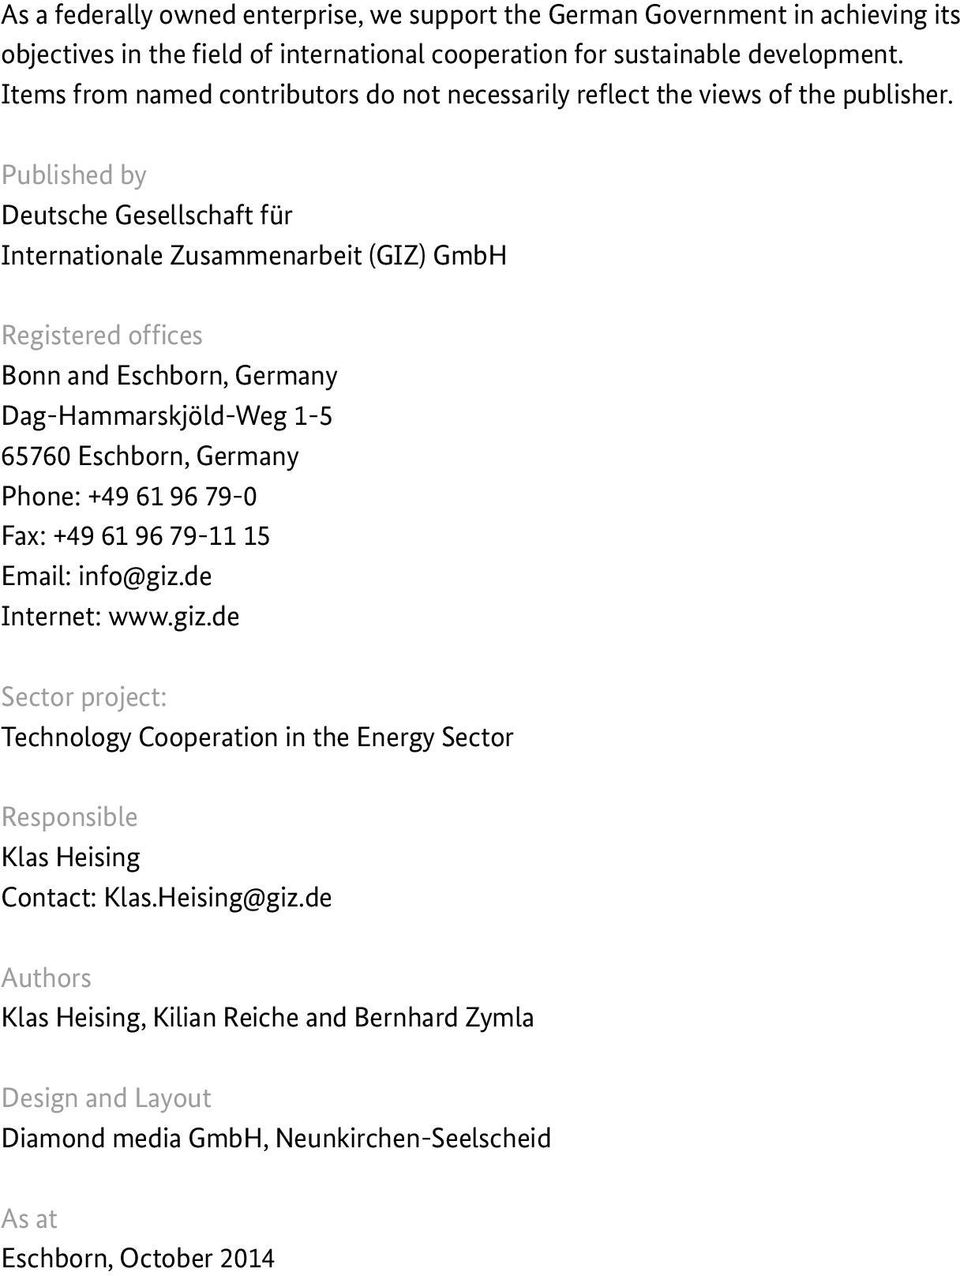 Published by Deutsche Gesellschaft für Internationale Zusammenarbeit (GIZ) GmbH Registered offices Bonn and Eschborn, Germany Dag-Hammarskjöld-Weg 1-5 65760 Eschborn, Germany Phone: +49 61 96